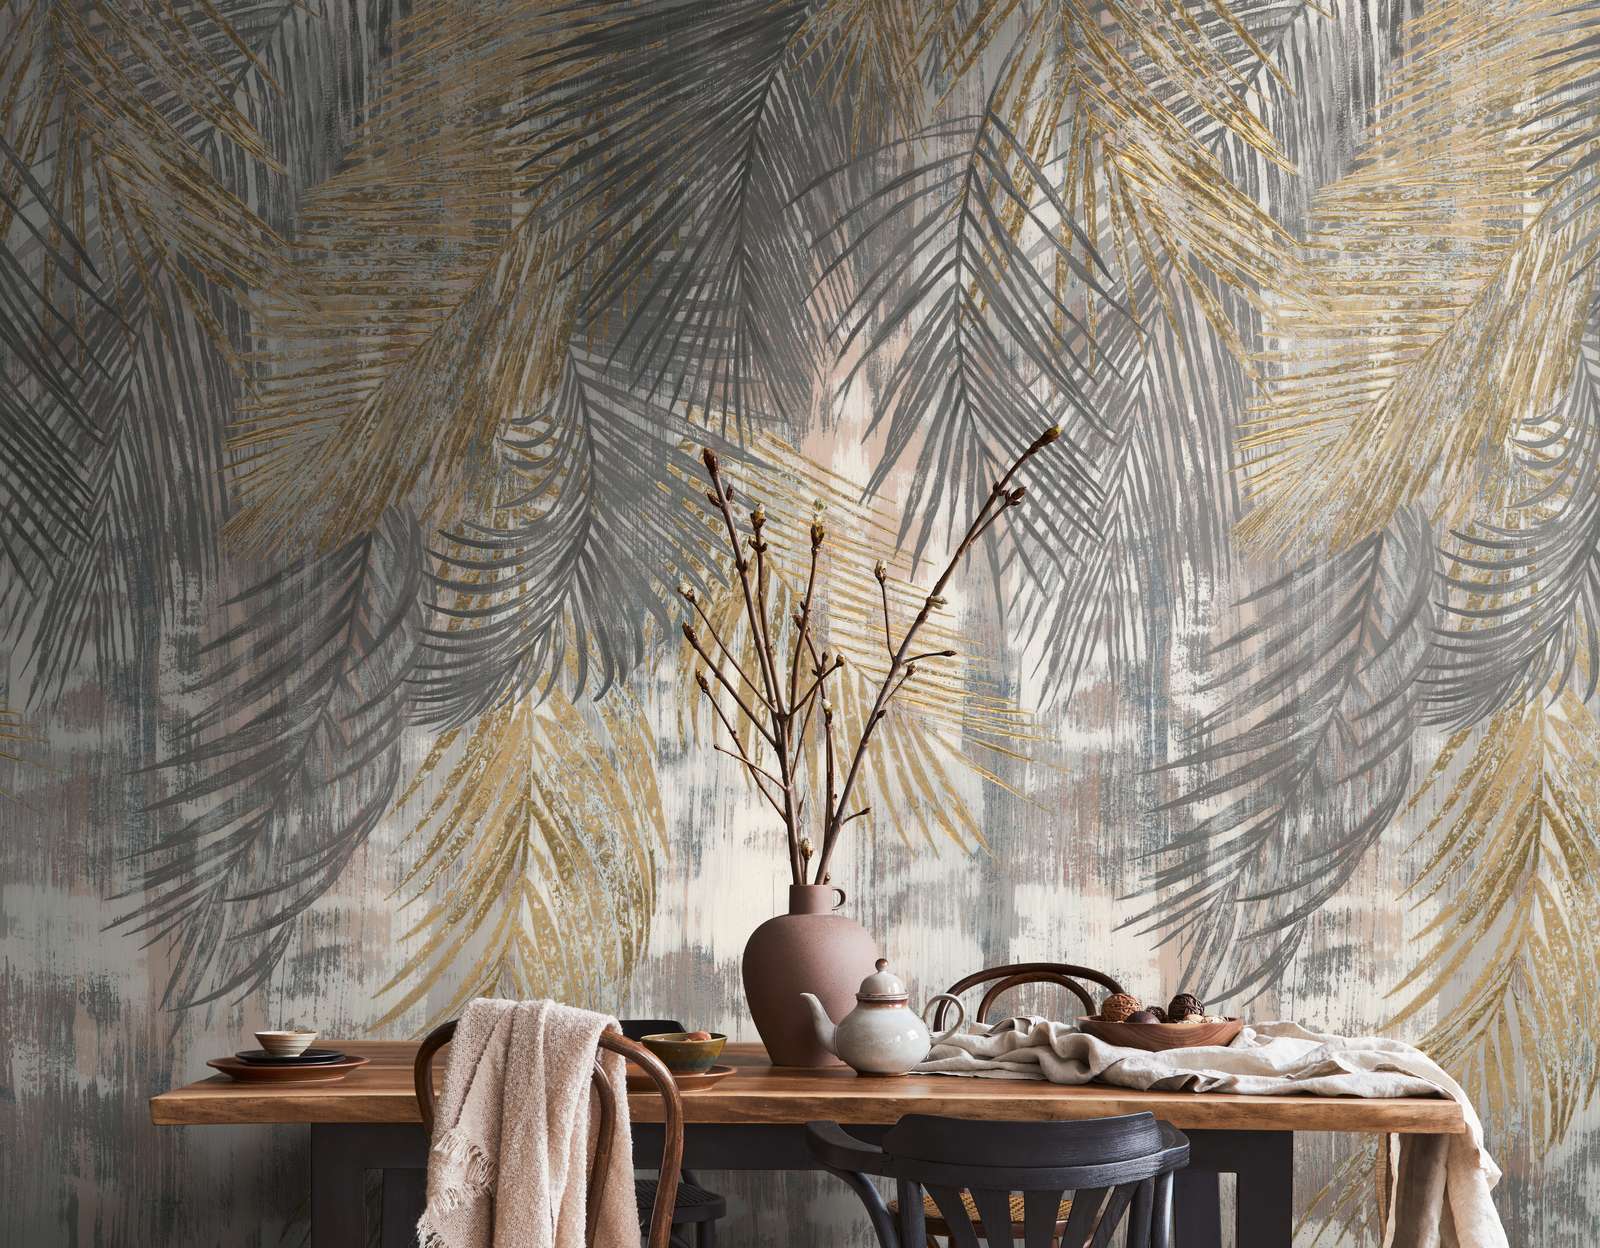             Papel pintado no tejido grandes hojas de palmera en aspecto usado - gris, amarillo, beige
        